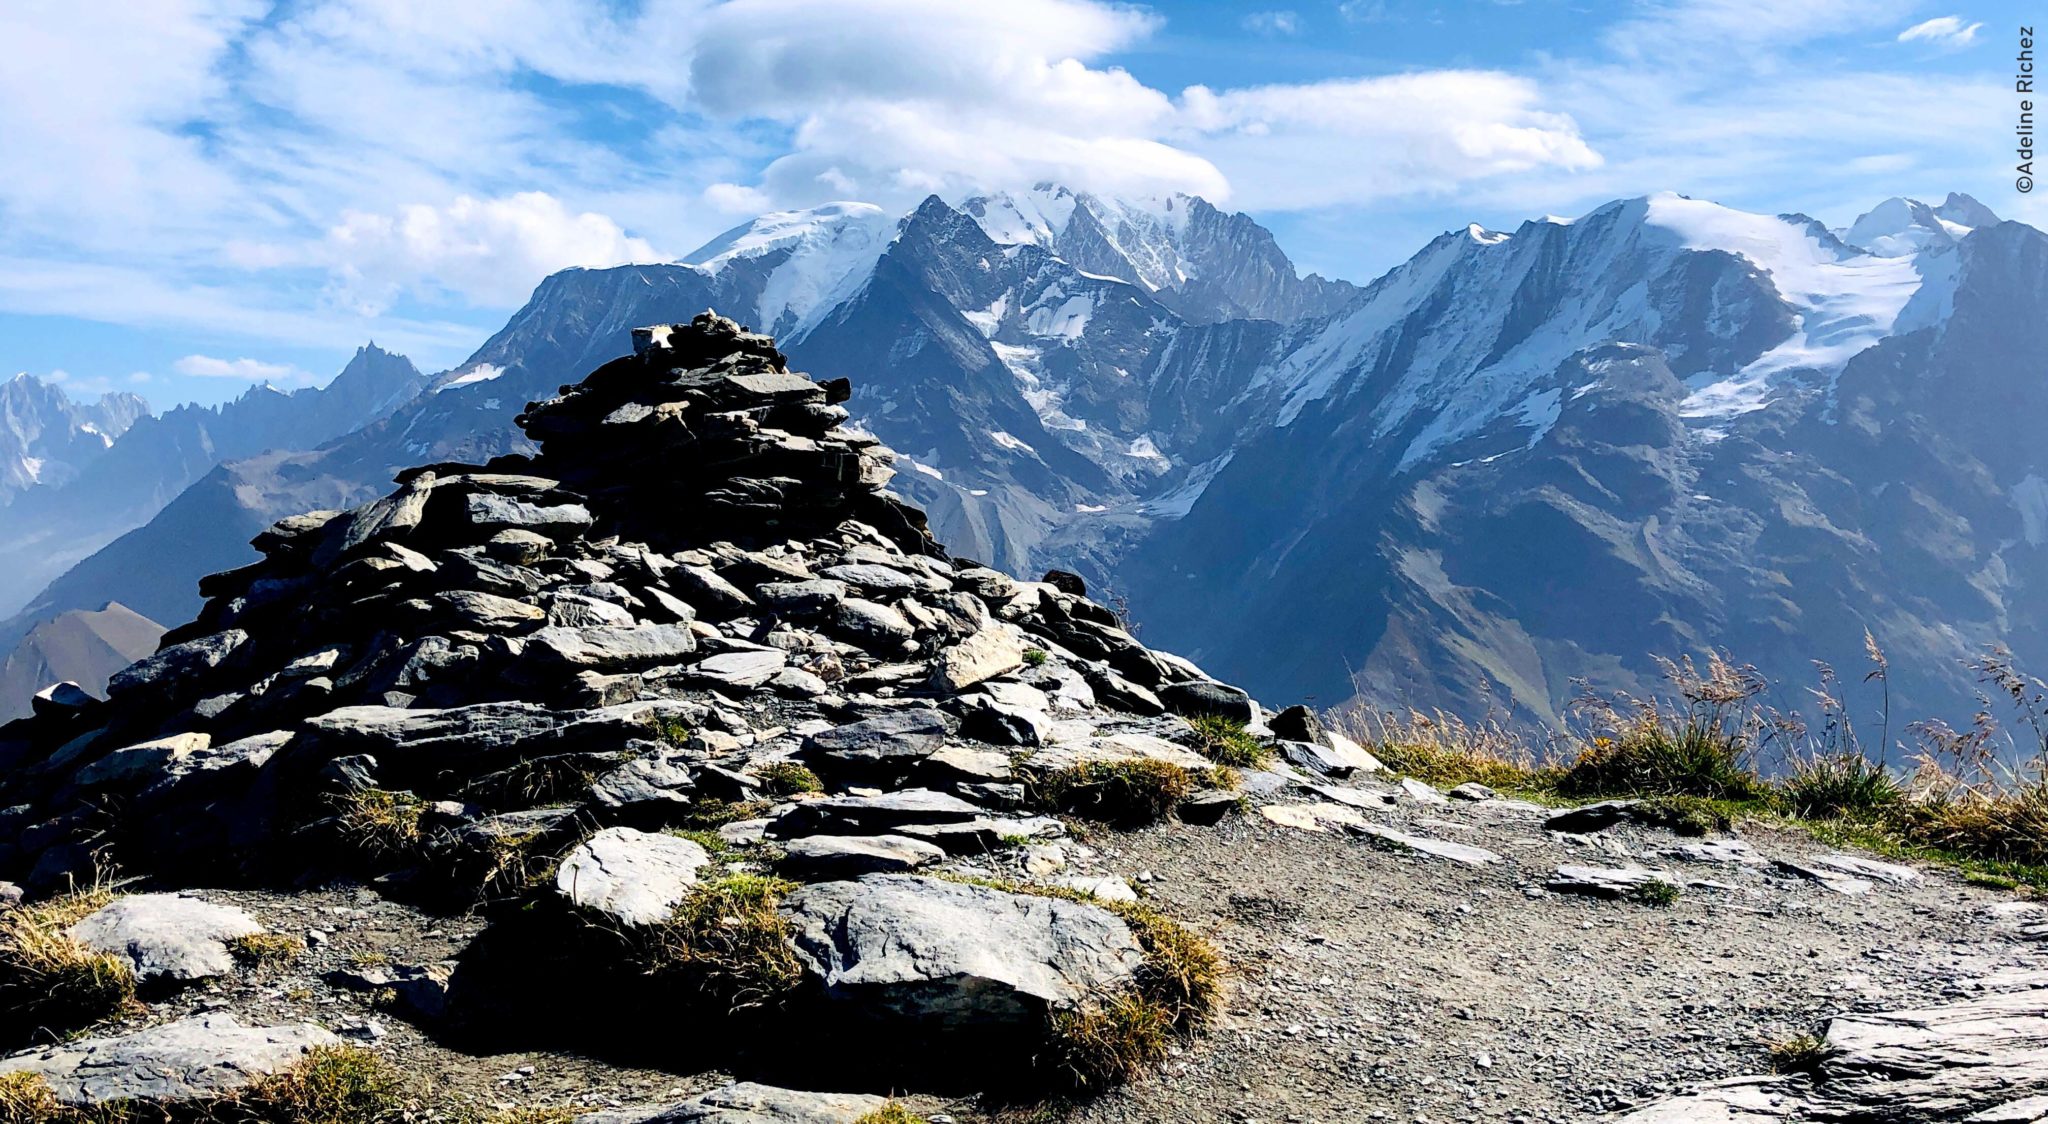 Au premier plan on voit un amas de pierre, un cairn, qui indique le sommet. Au second plan, on voit la chaine des sommets du massif du Mont Blanc.